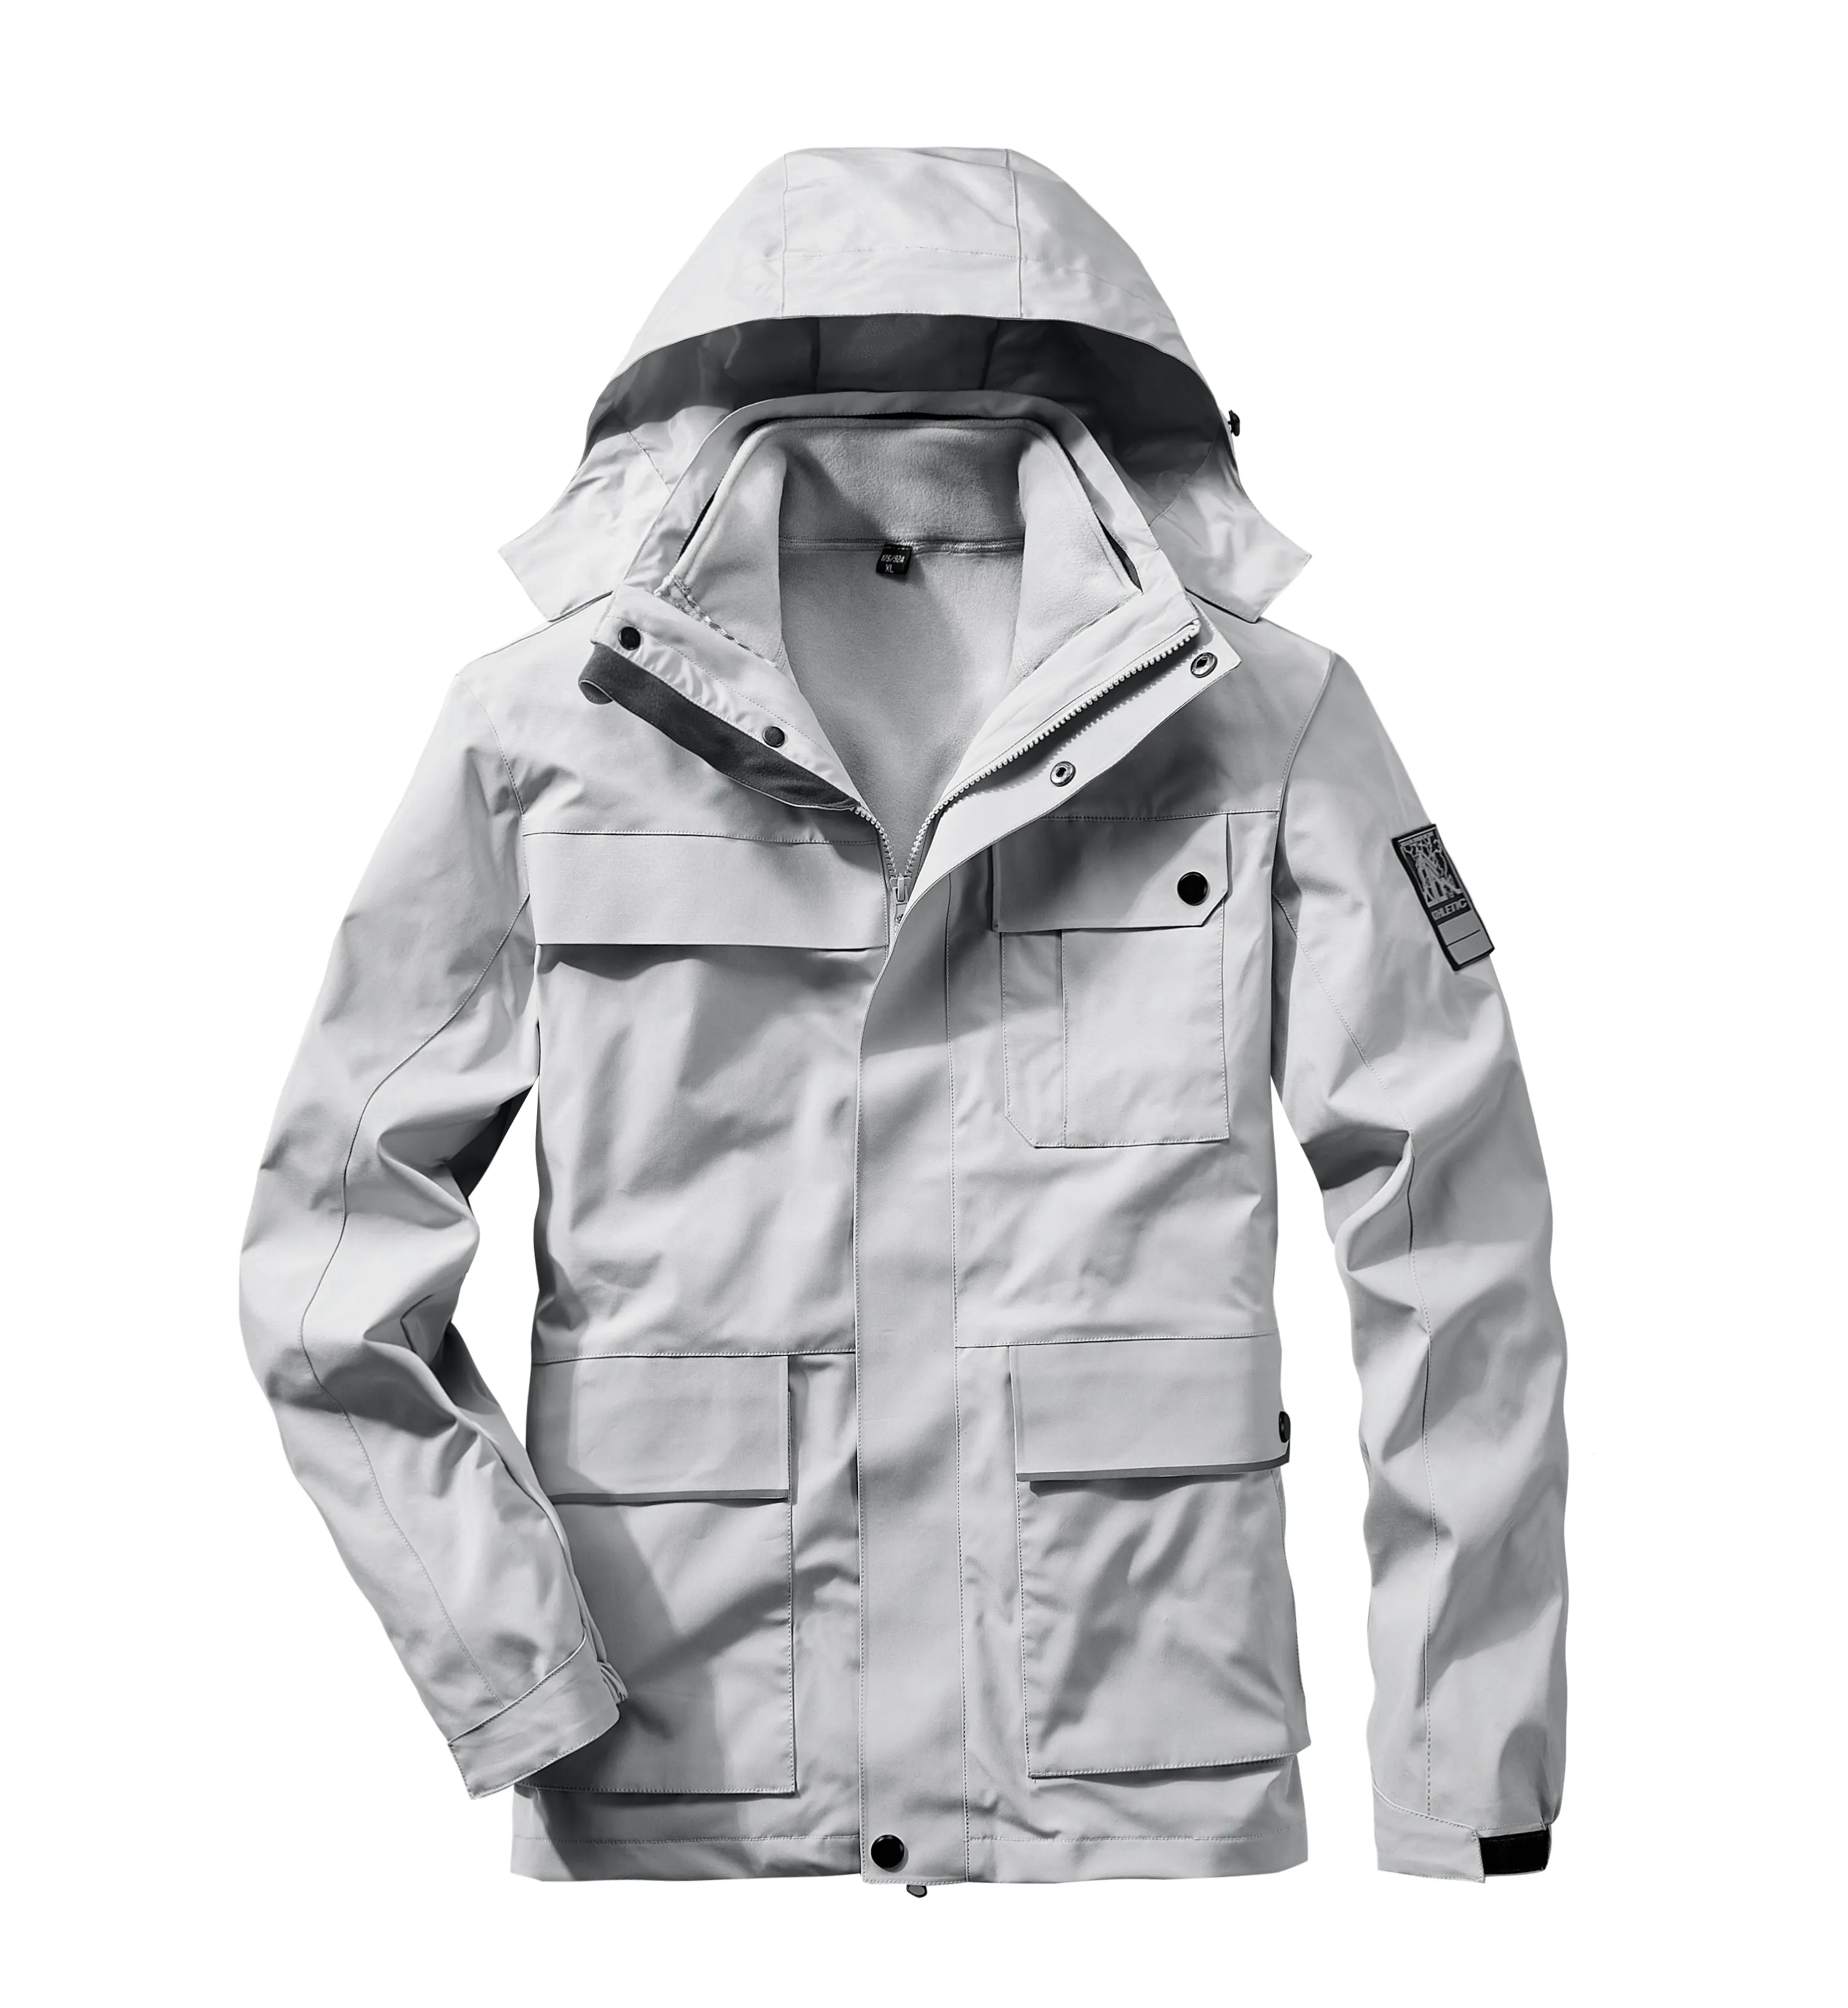 Hot sales 3 in 1 outdoor jacket waterproof windbreaker Detachable coat for men and women sportswear